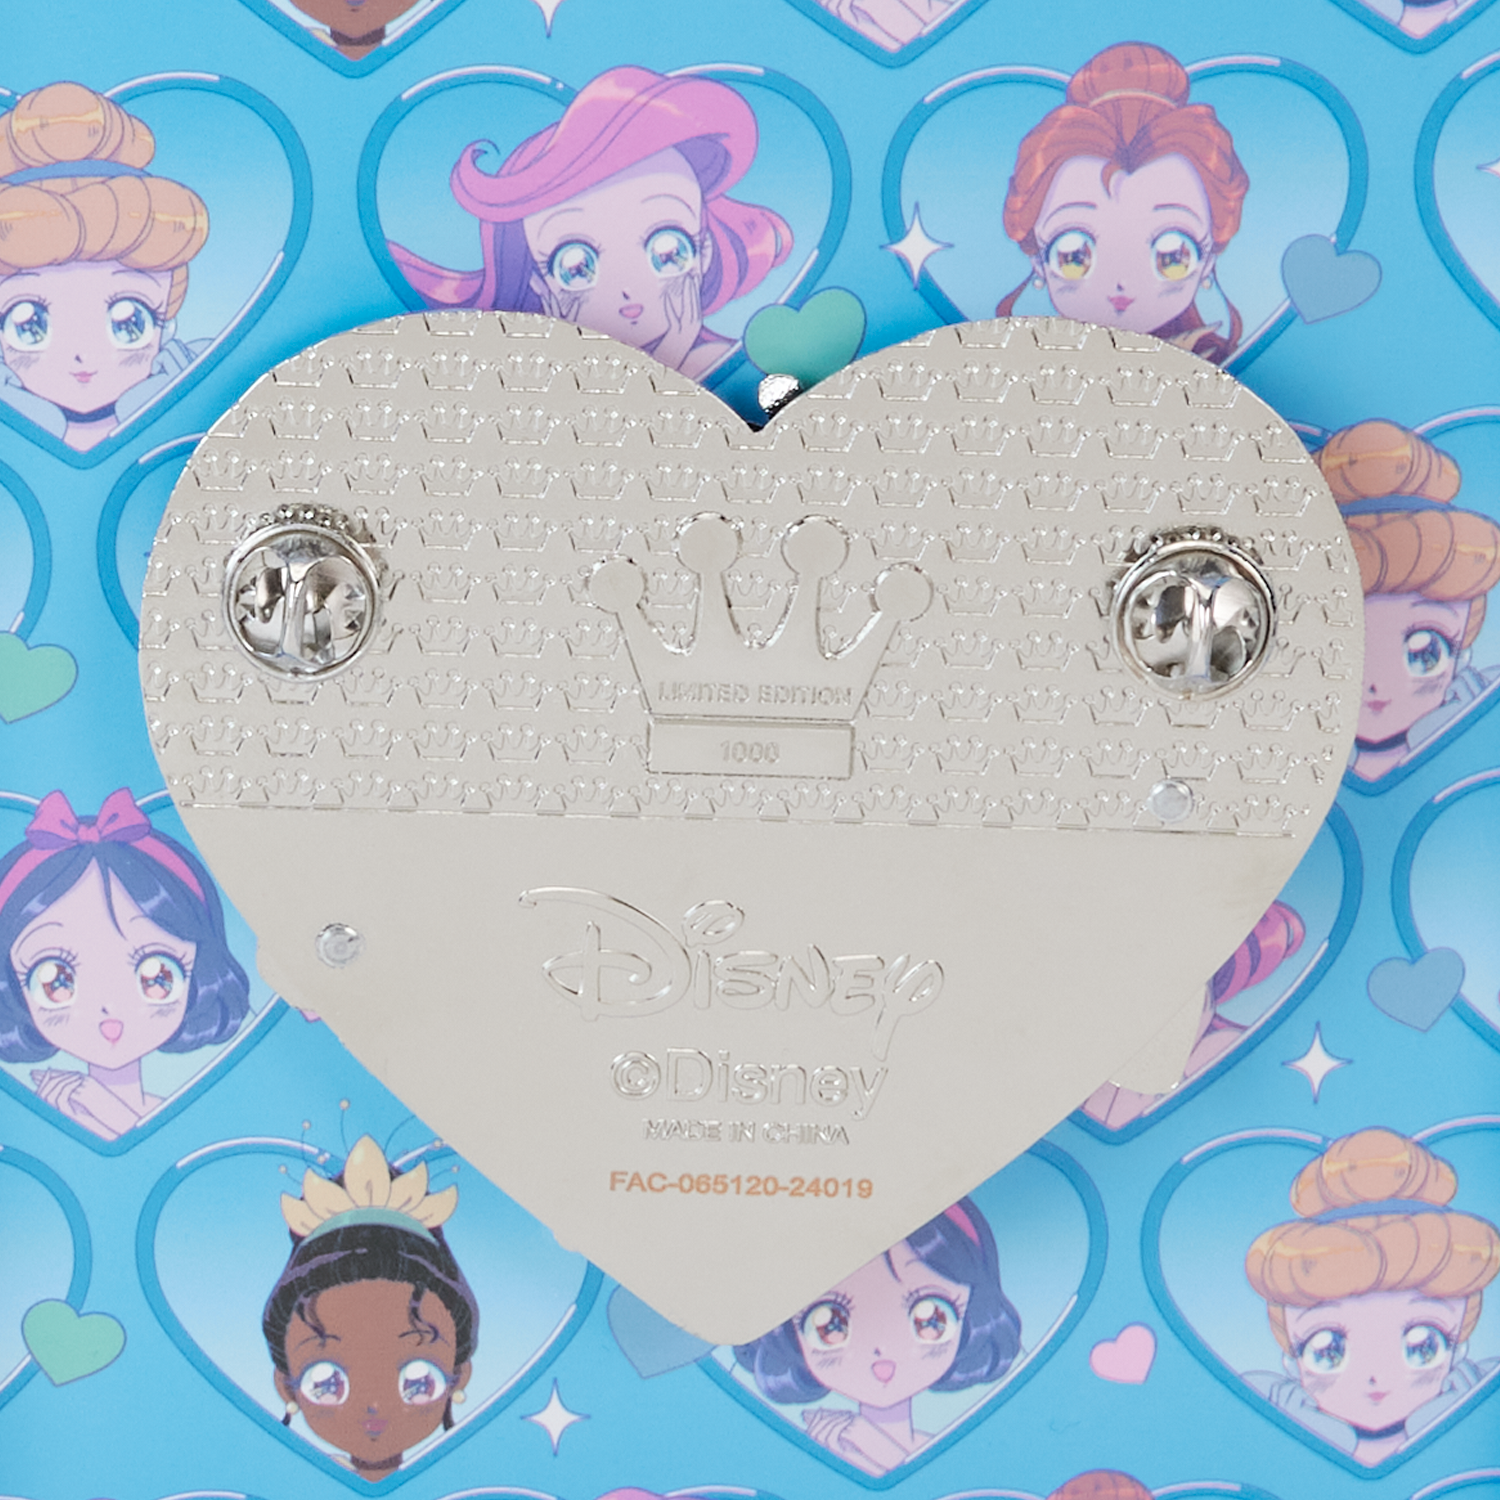 Loungefly x Disney Princess Manga Style 3 Inch Pin